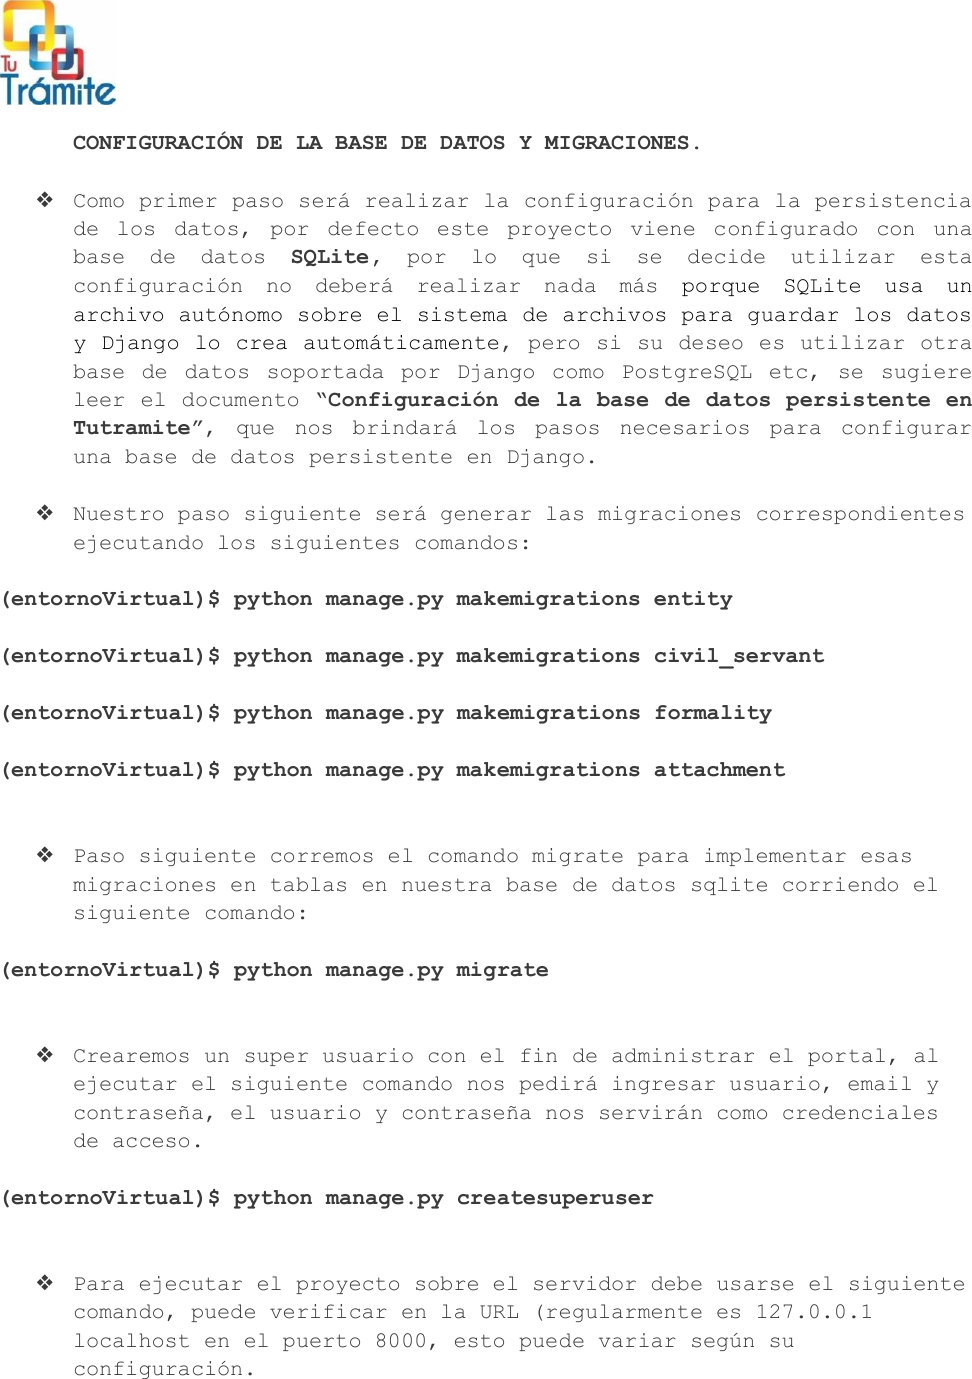 Page 3 of 4 - Manual Despliegue Windows